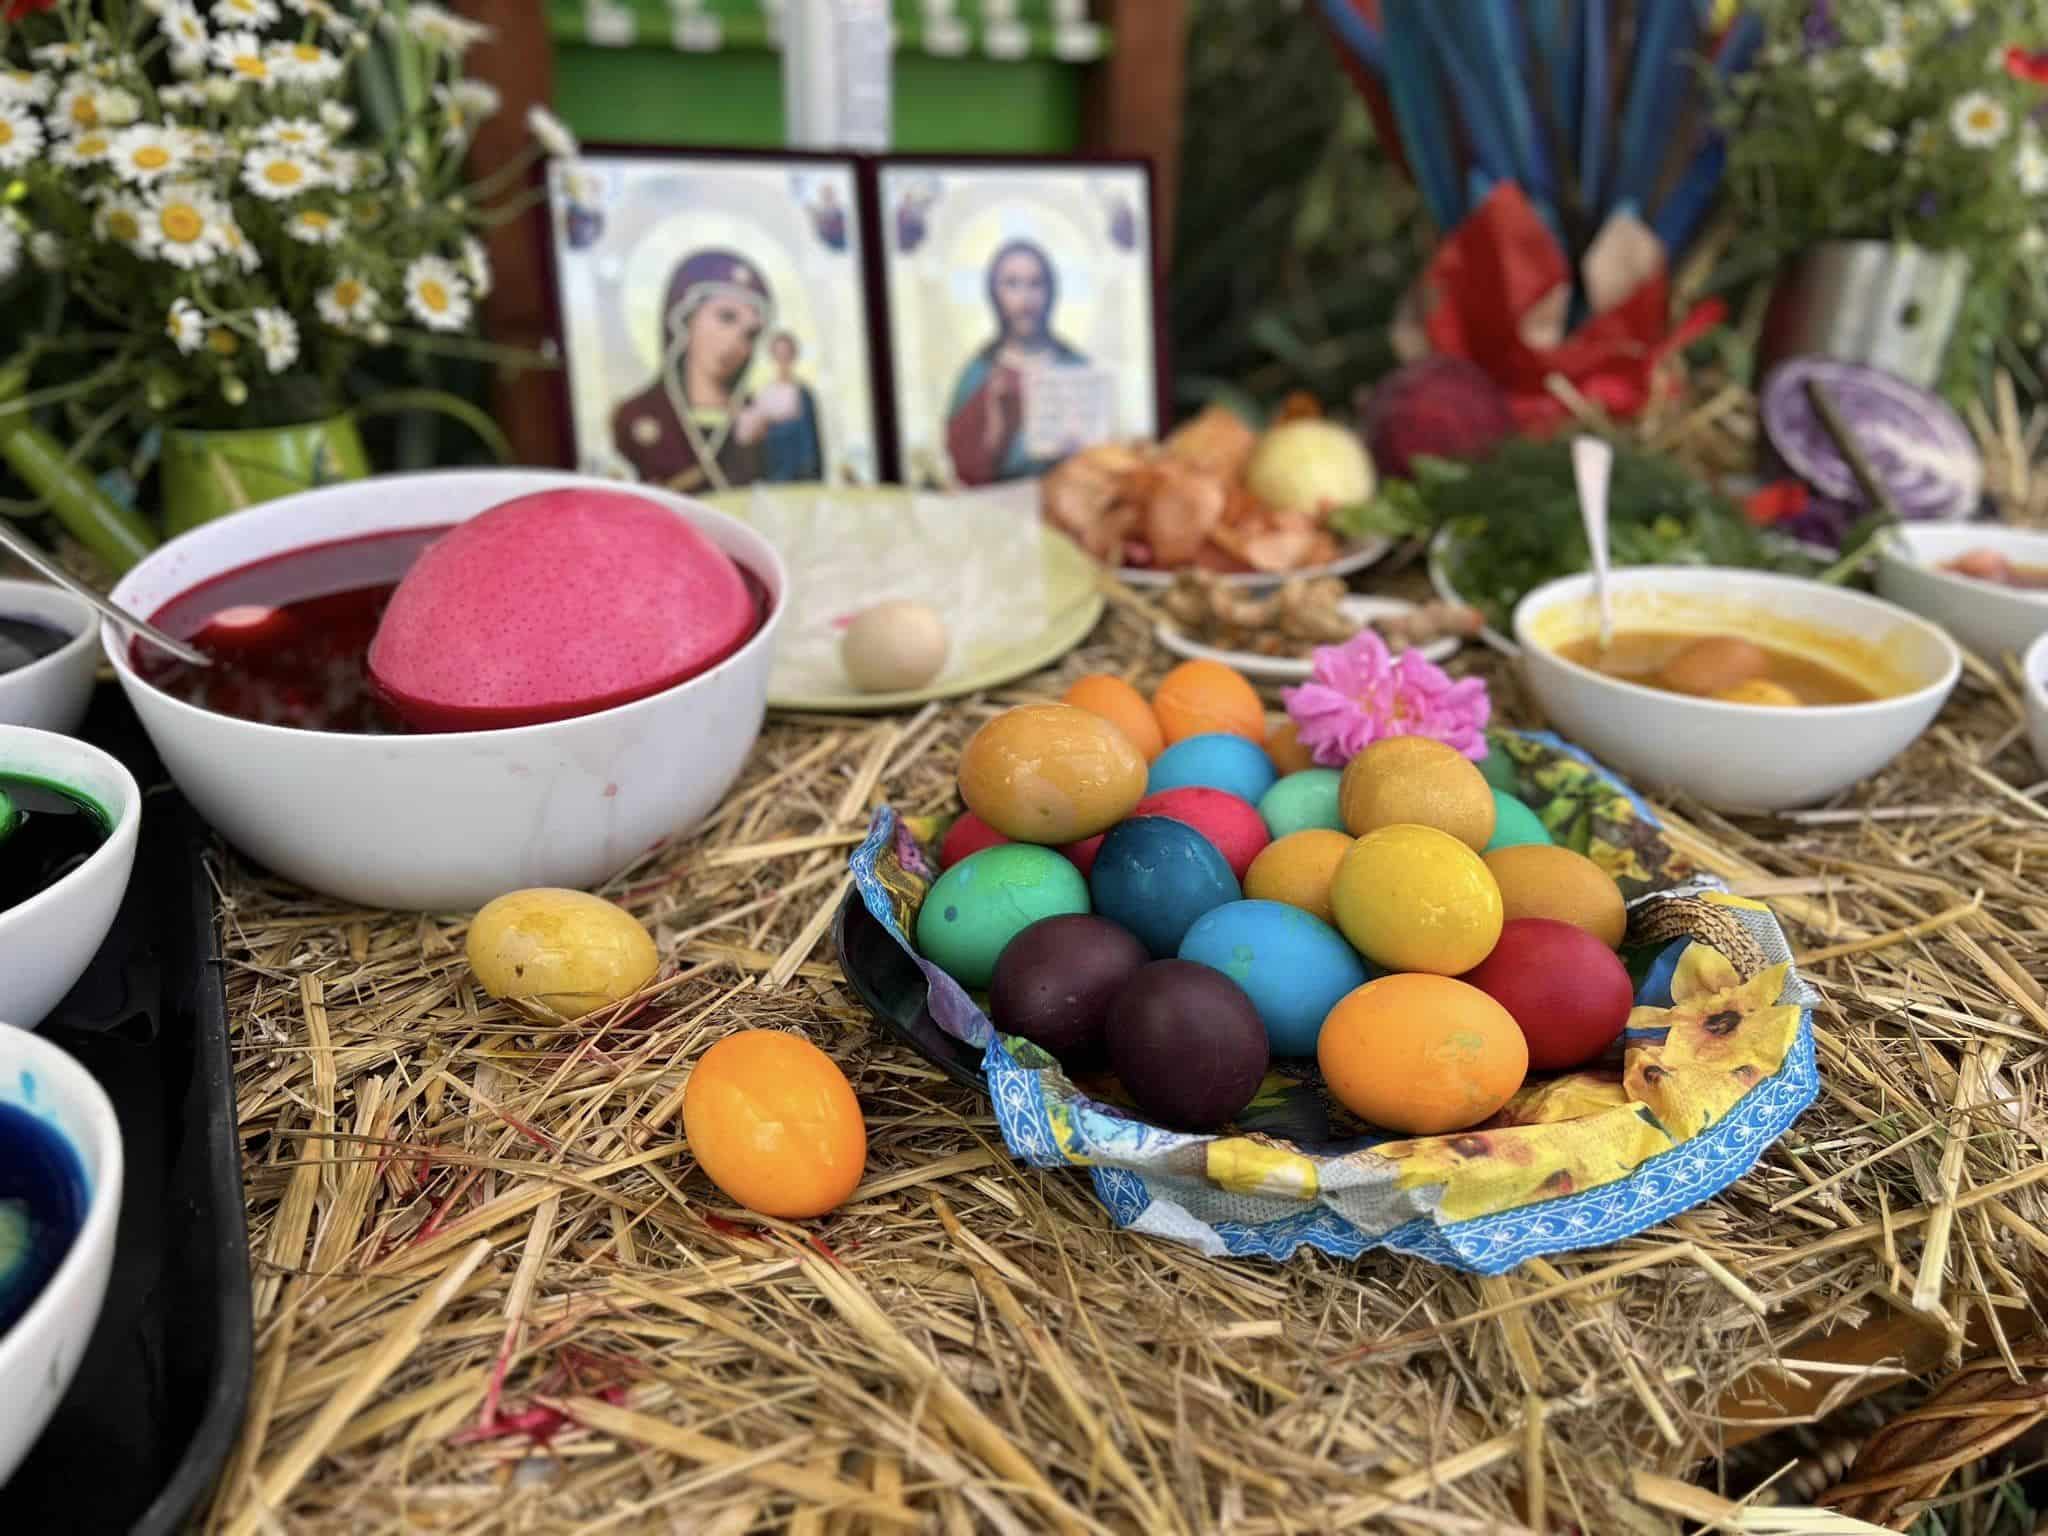 Великден е! Това е един от най-големите празници за православните